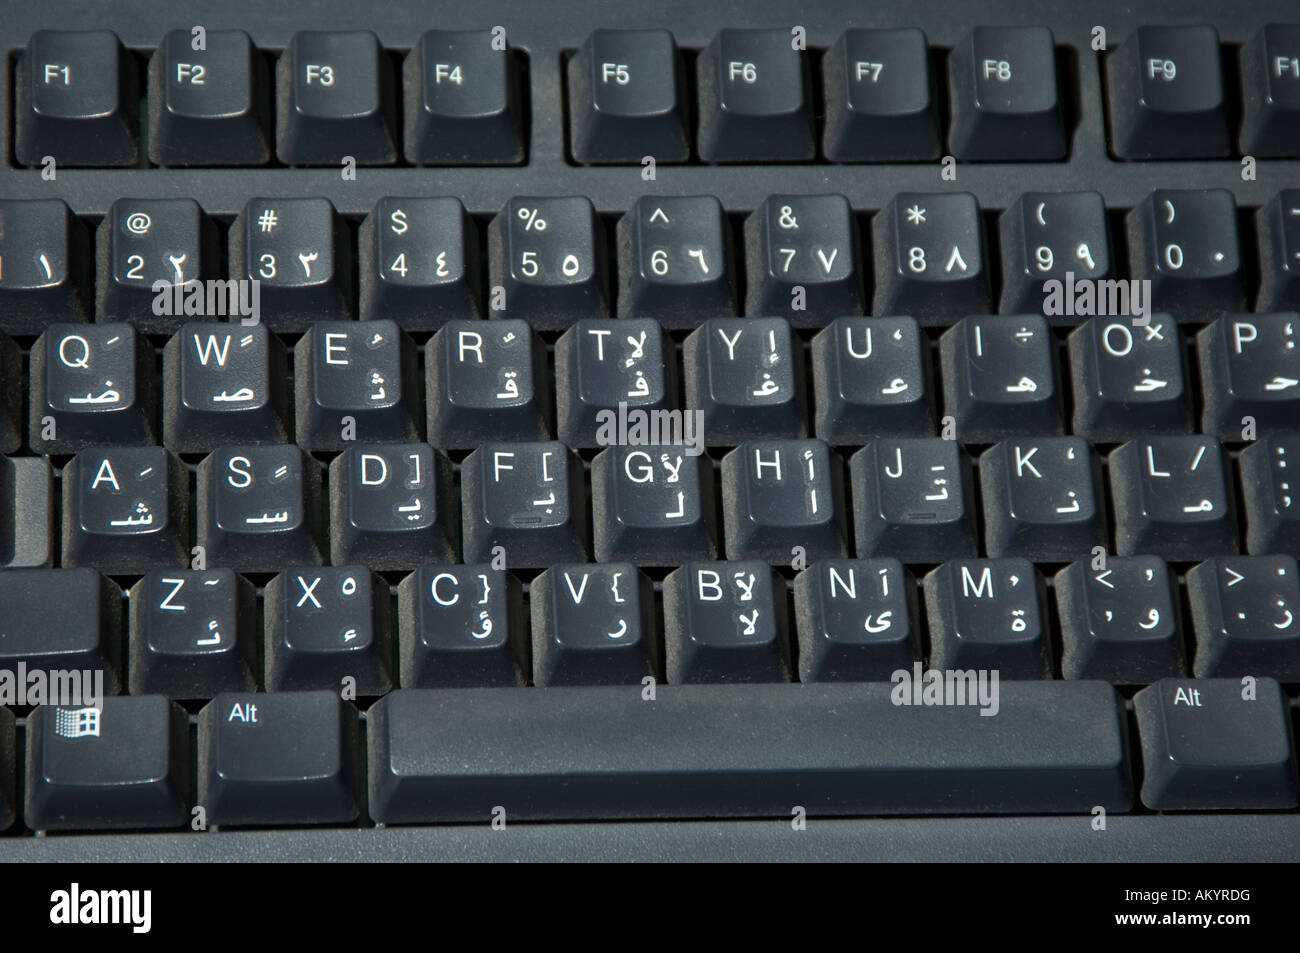 Nahaufnahme von Arabisch und Englisch Buchstaben Computer-Tastatur  Stockfotografie - Alamy